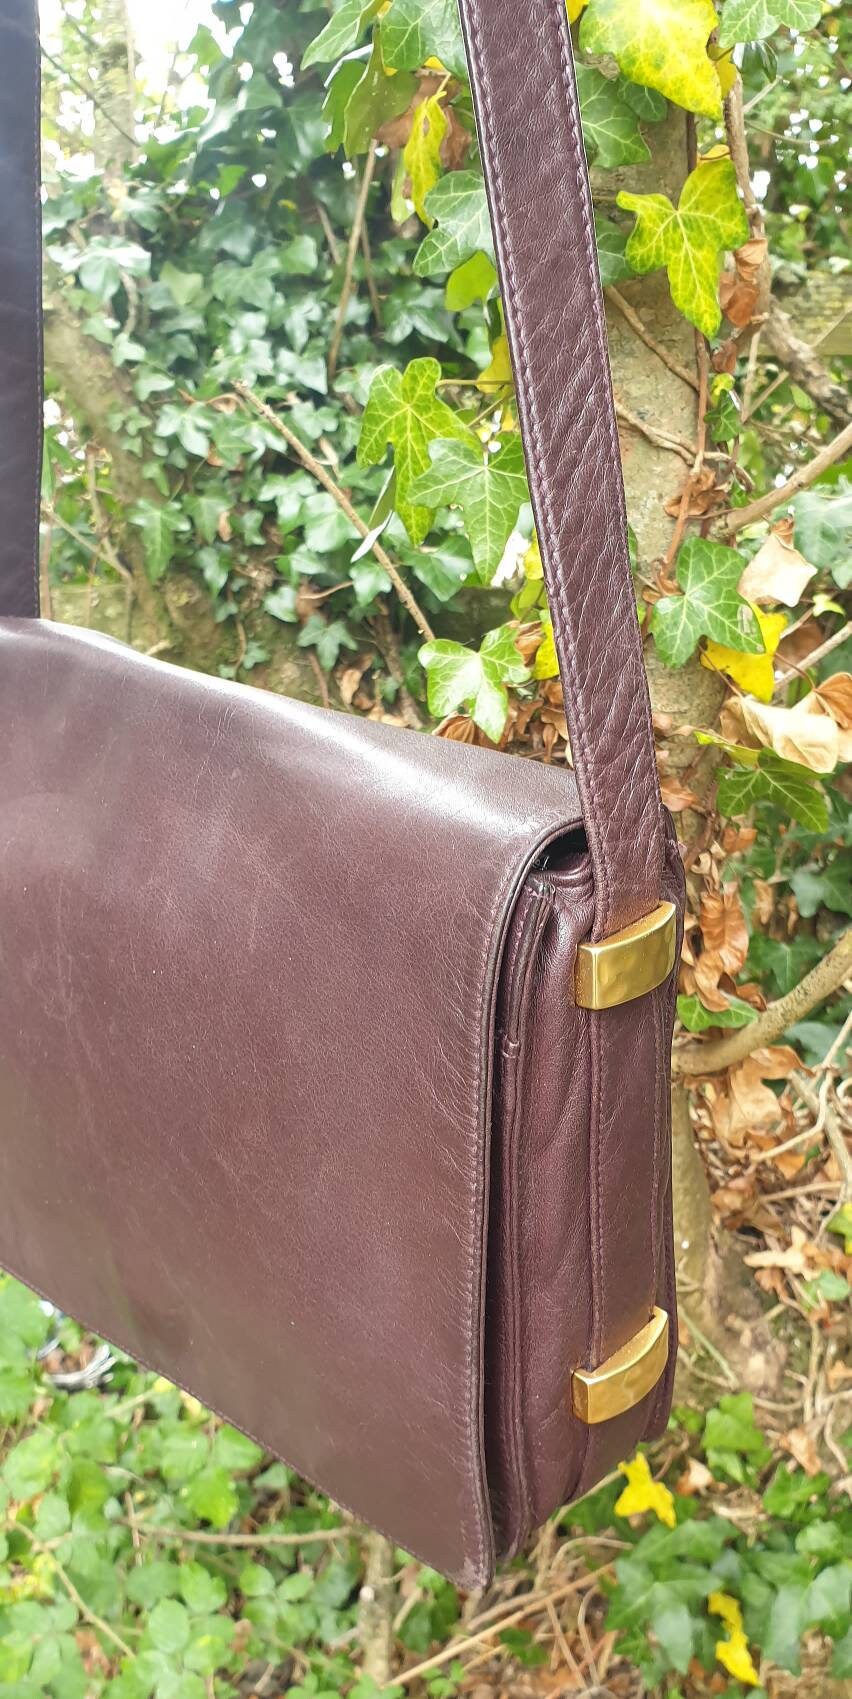 80s Oxblood Brown Leather Messenger Bag. John Lewis Soft 